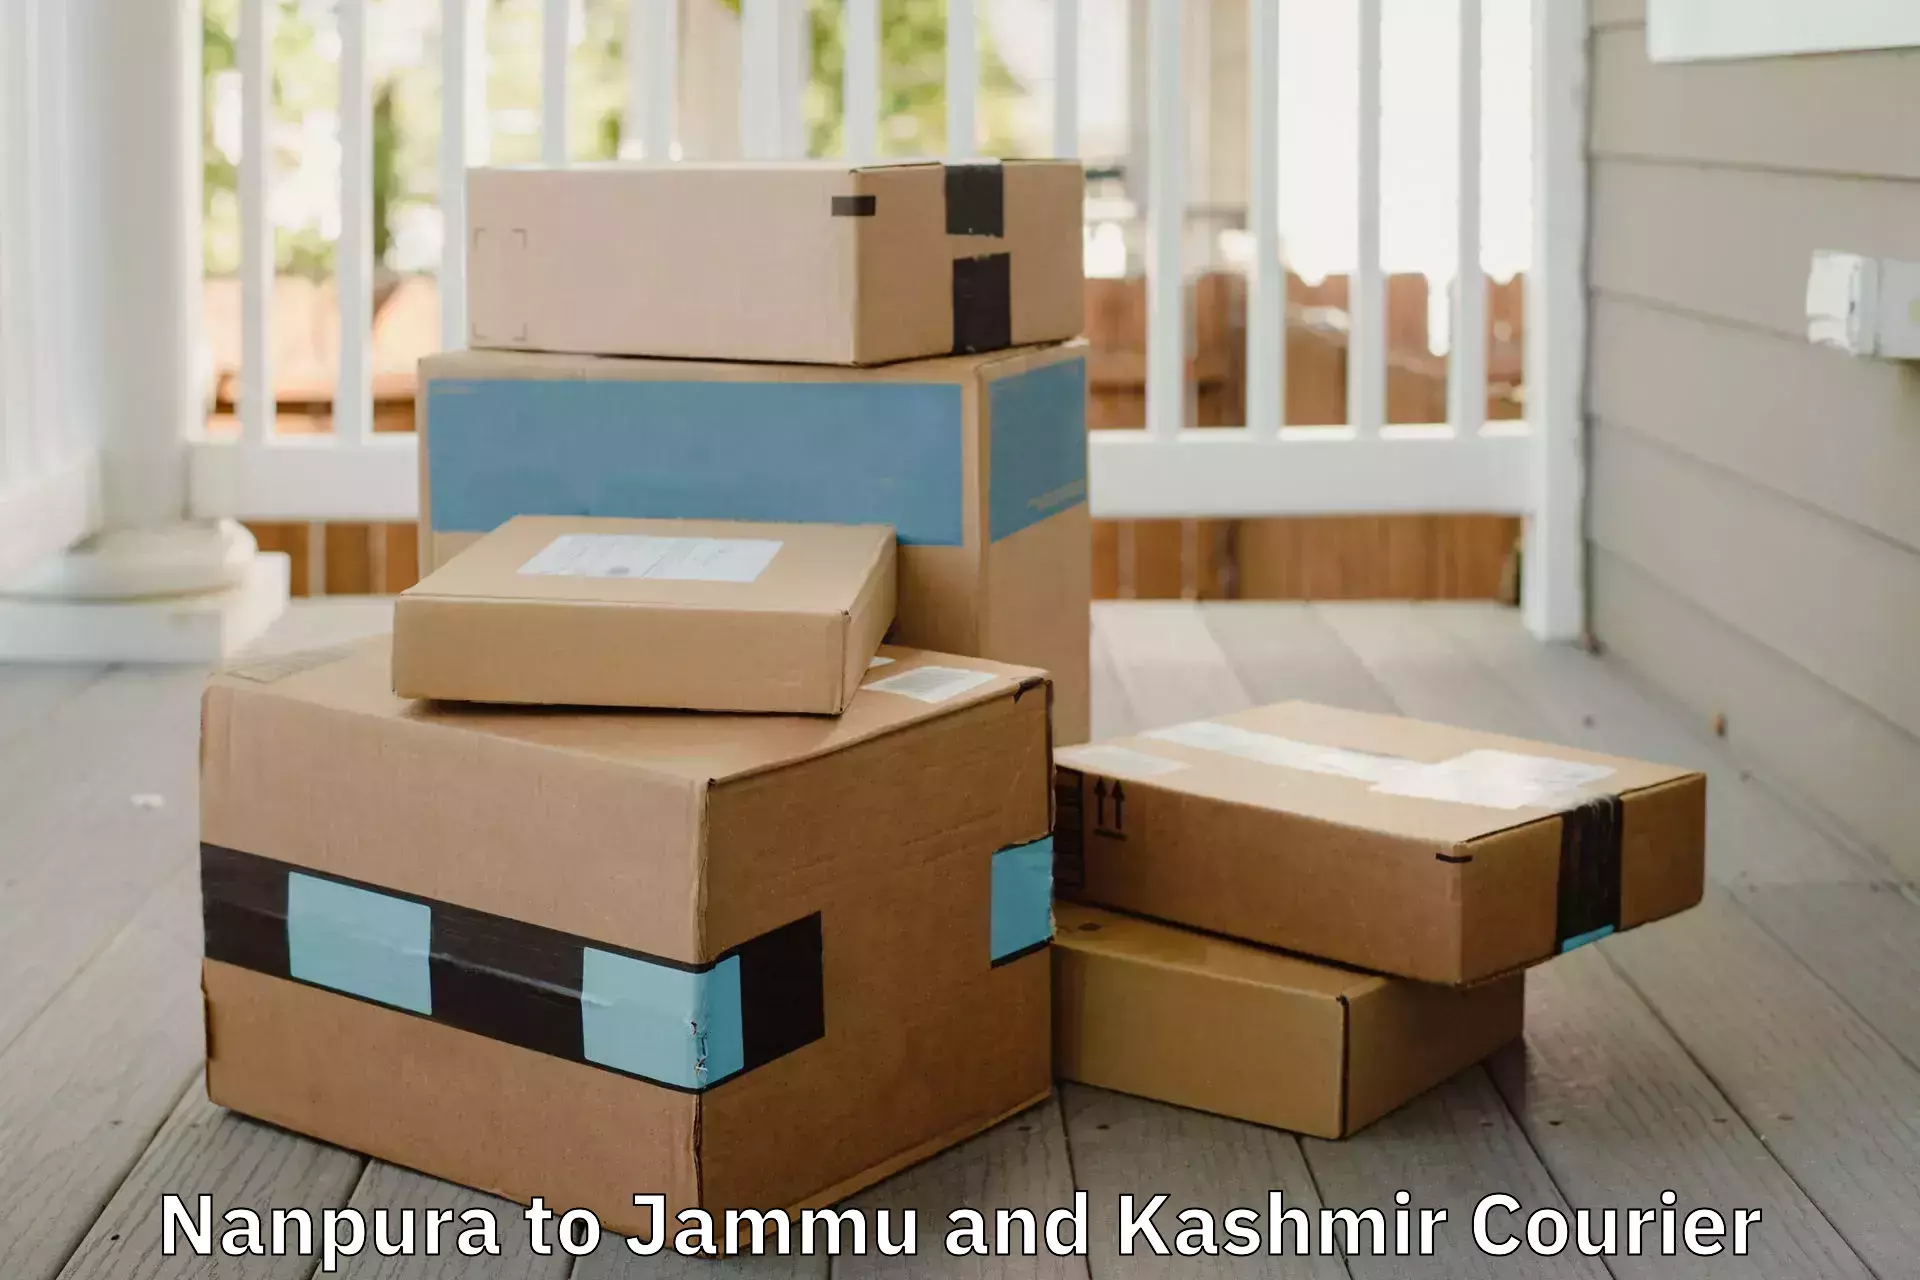 Quality moving company Nanpura to Jammu and Kashmir